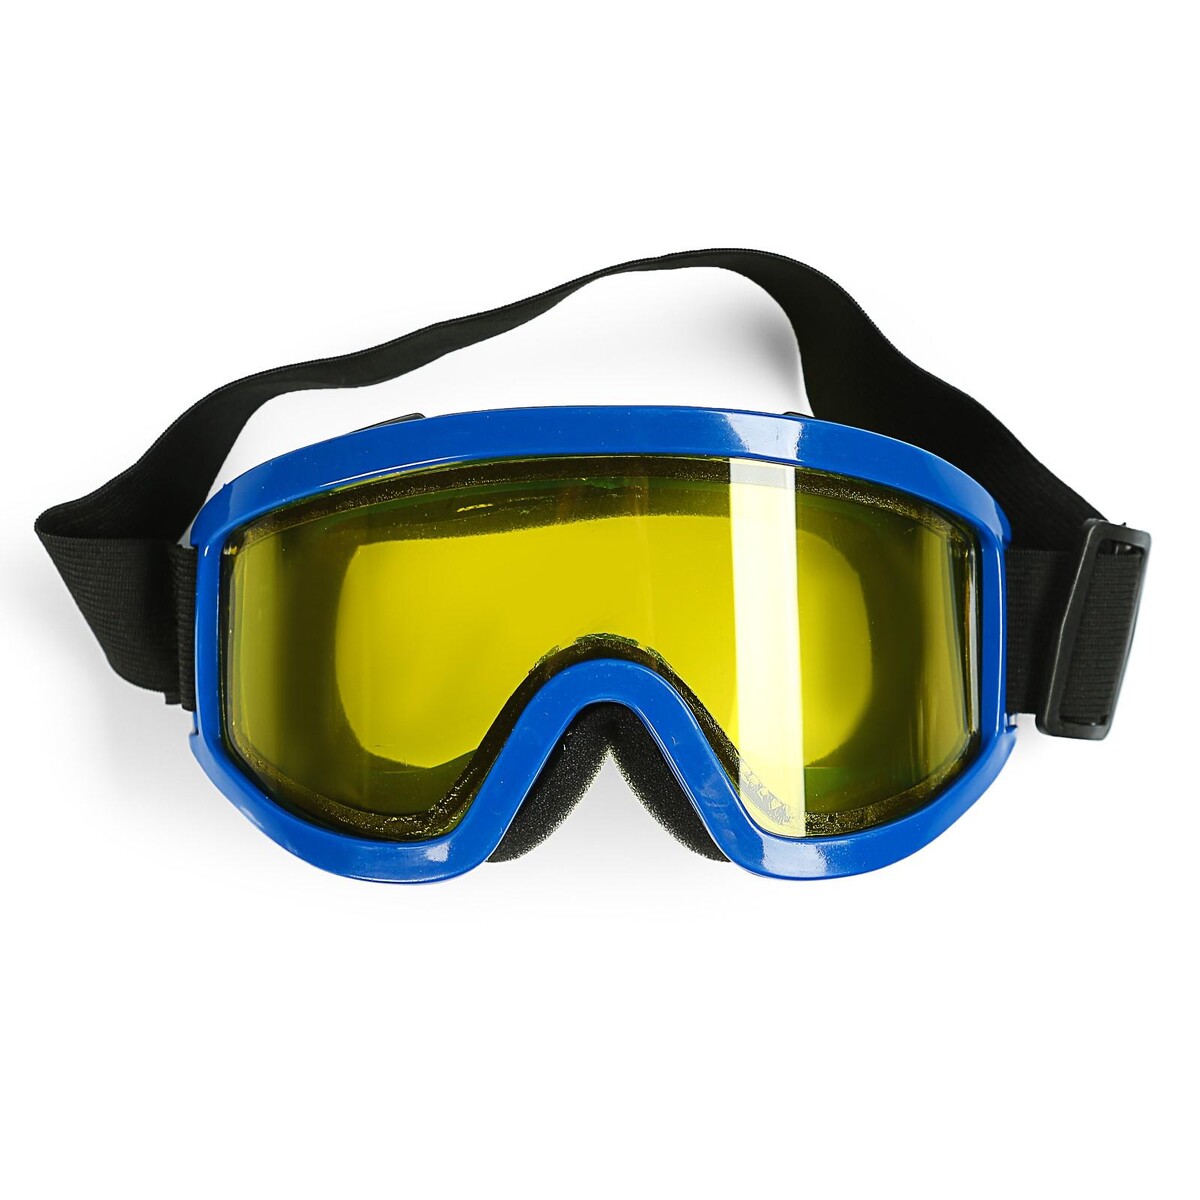 Очки-маска для езды на мототехнике, стекло двухслойное желтое, цвет синий очки маска для езды на мототехнике разборные стекло желтое